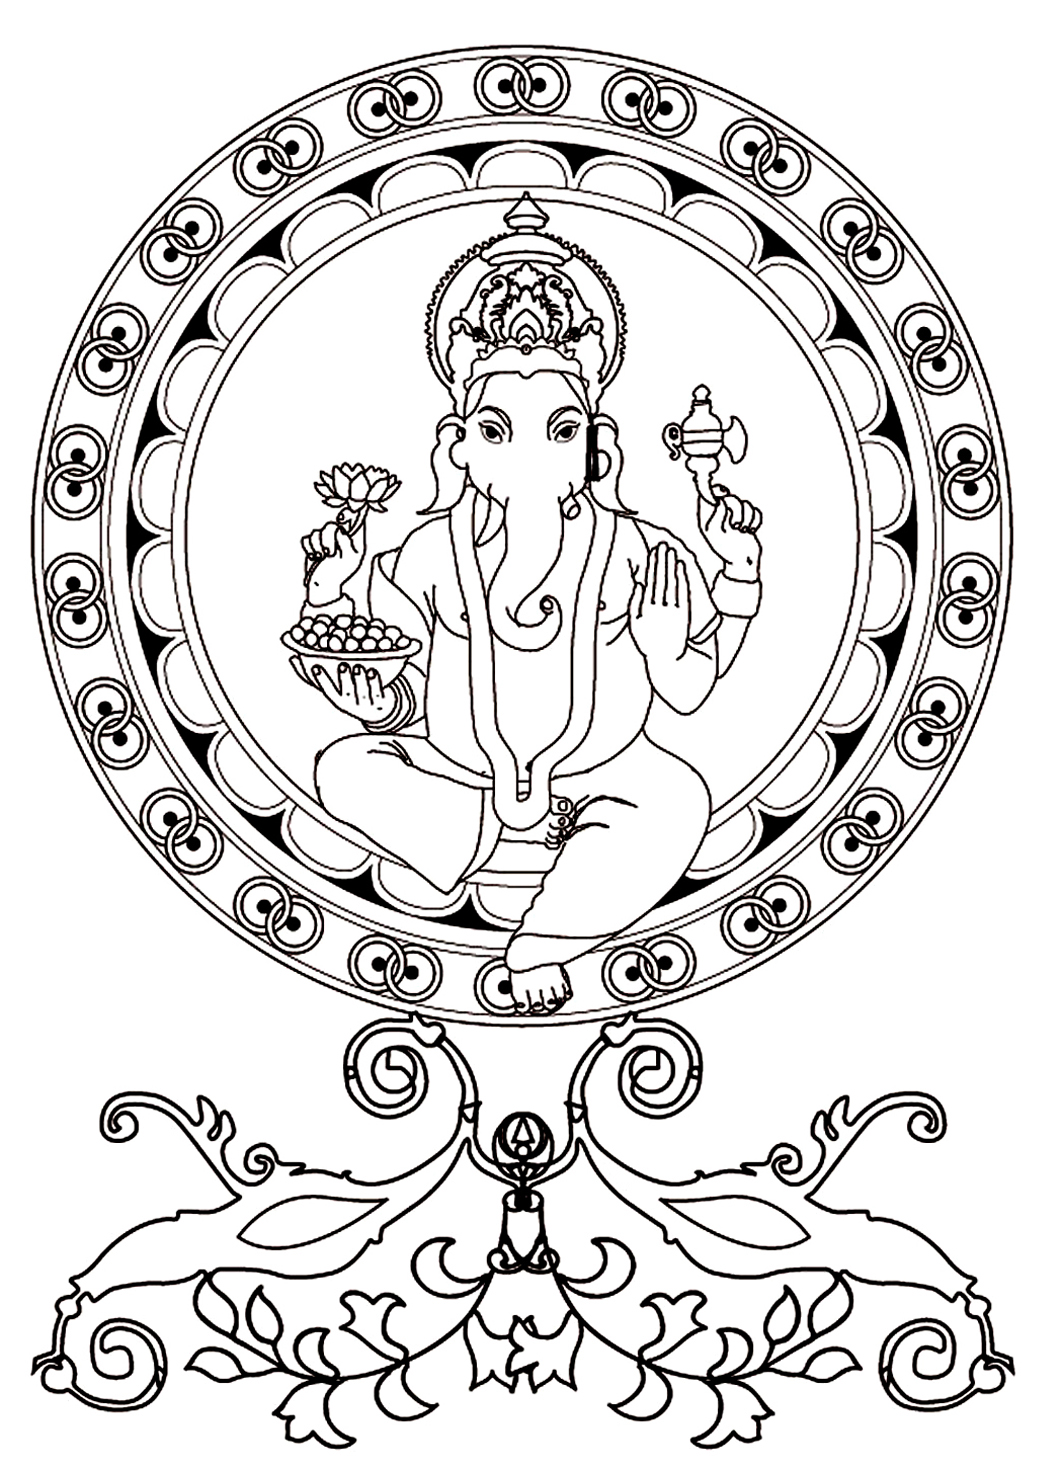 Malvorlage zu Ganesh, dem in Indien am meisten verehrten Gott mit dem Kopf eines Elefanten